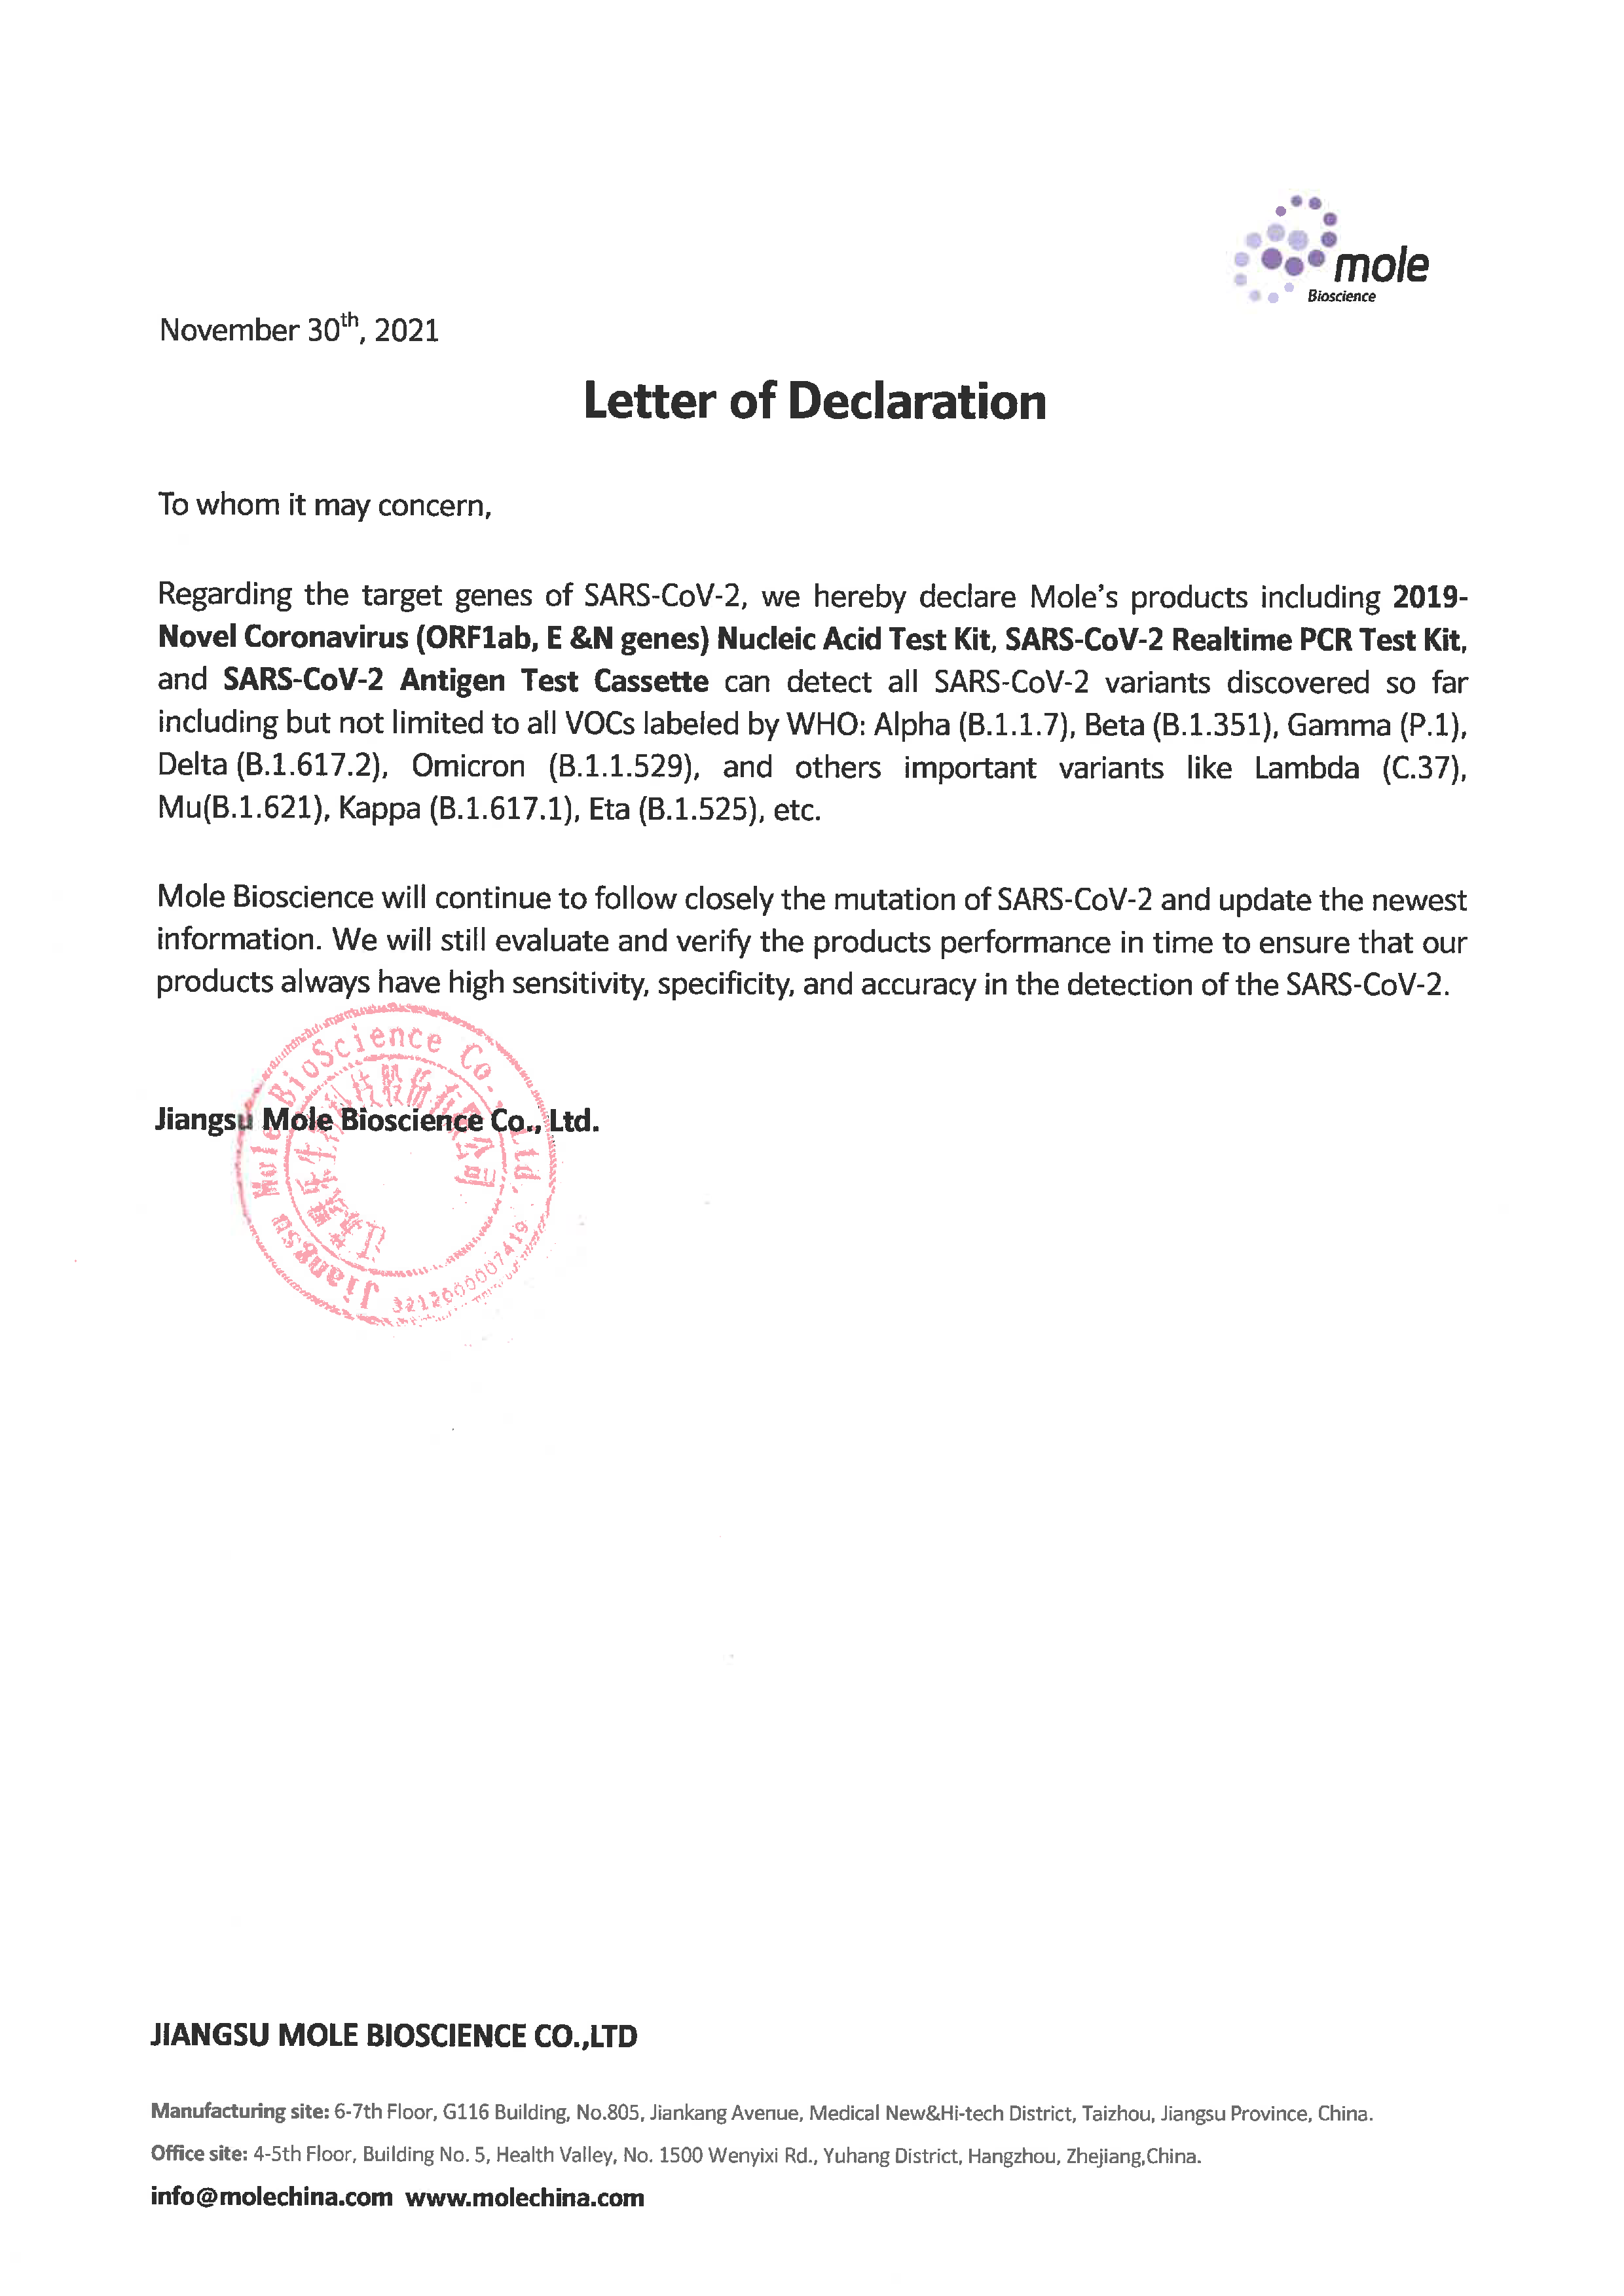 Letter of Declaration.png